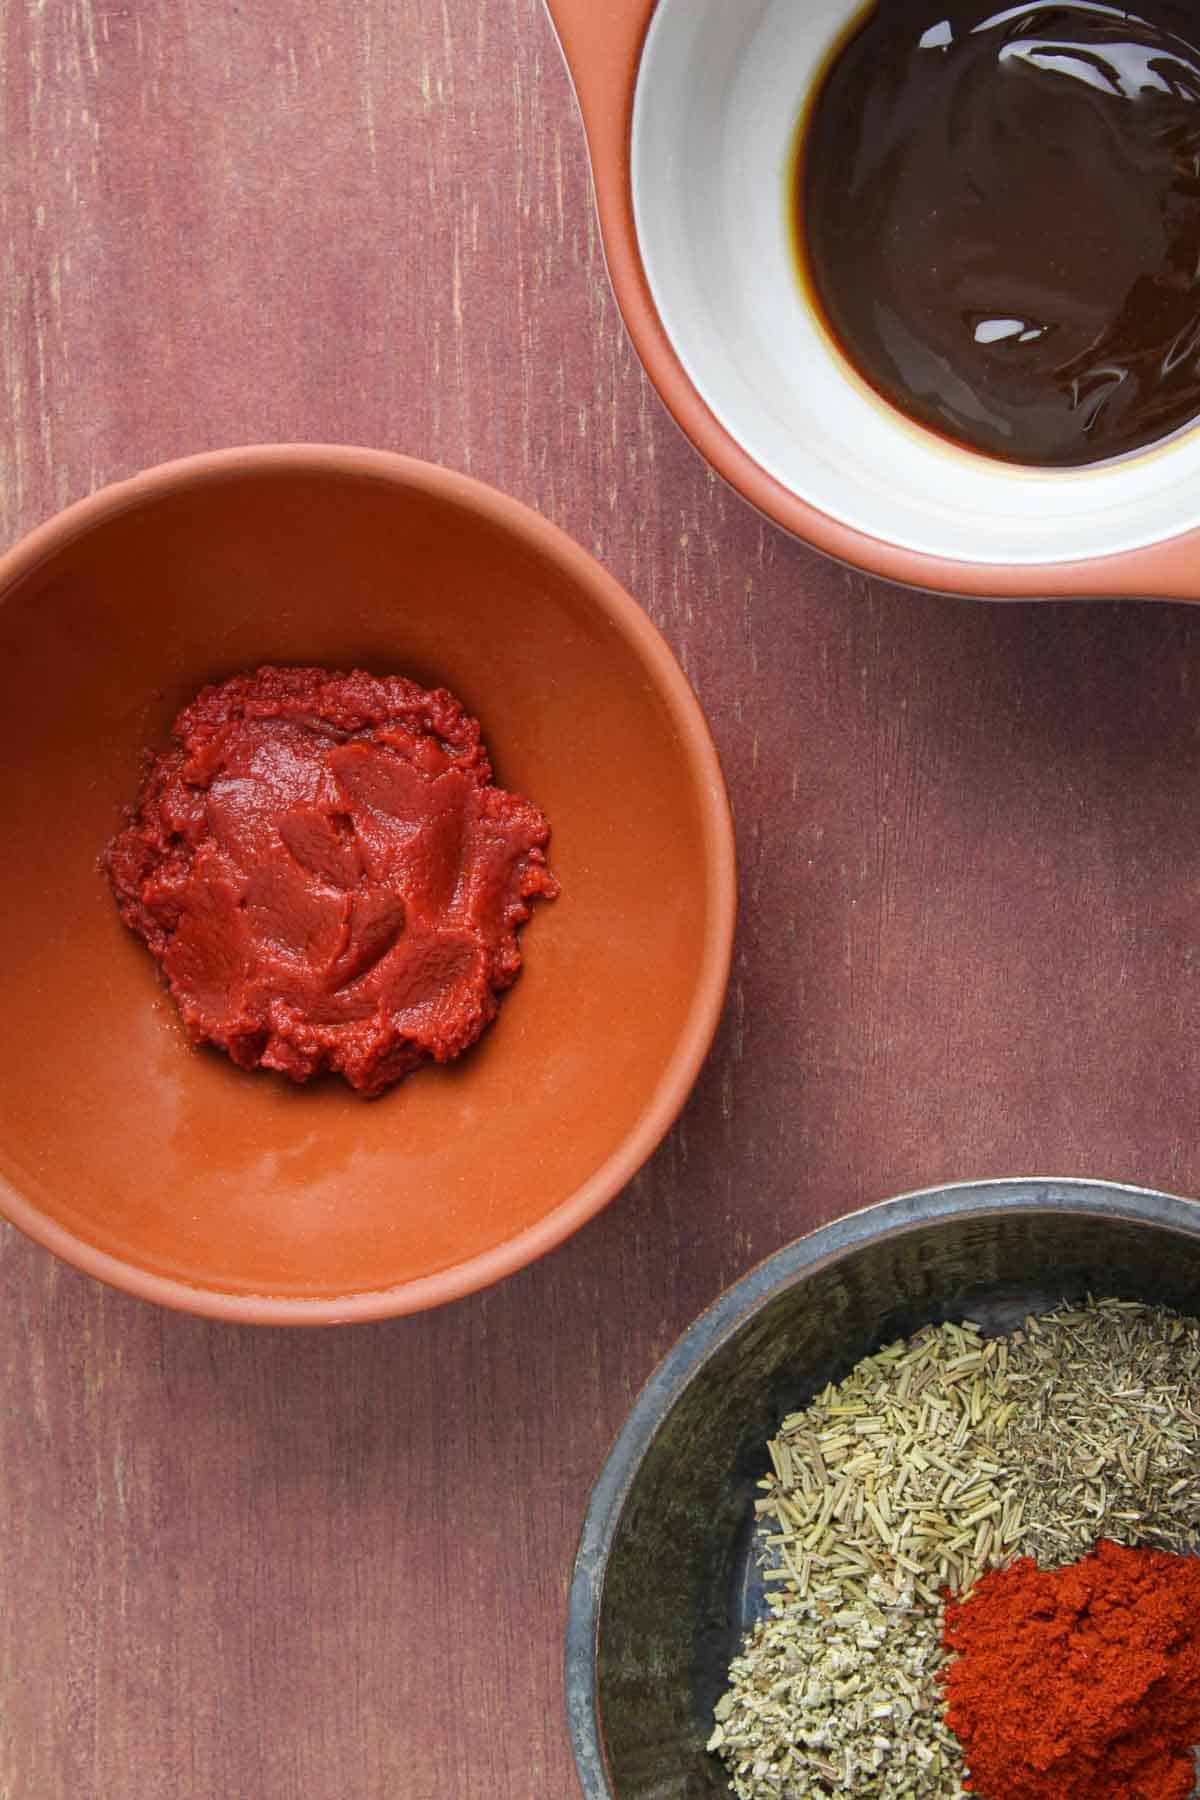 Ingredients to Make Vegan Stew Taste Like Meat